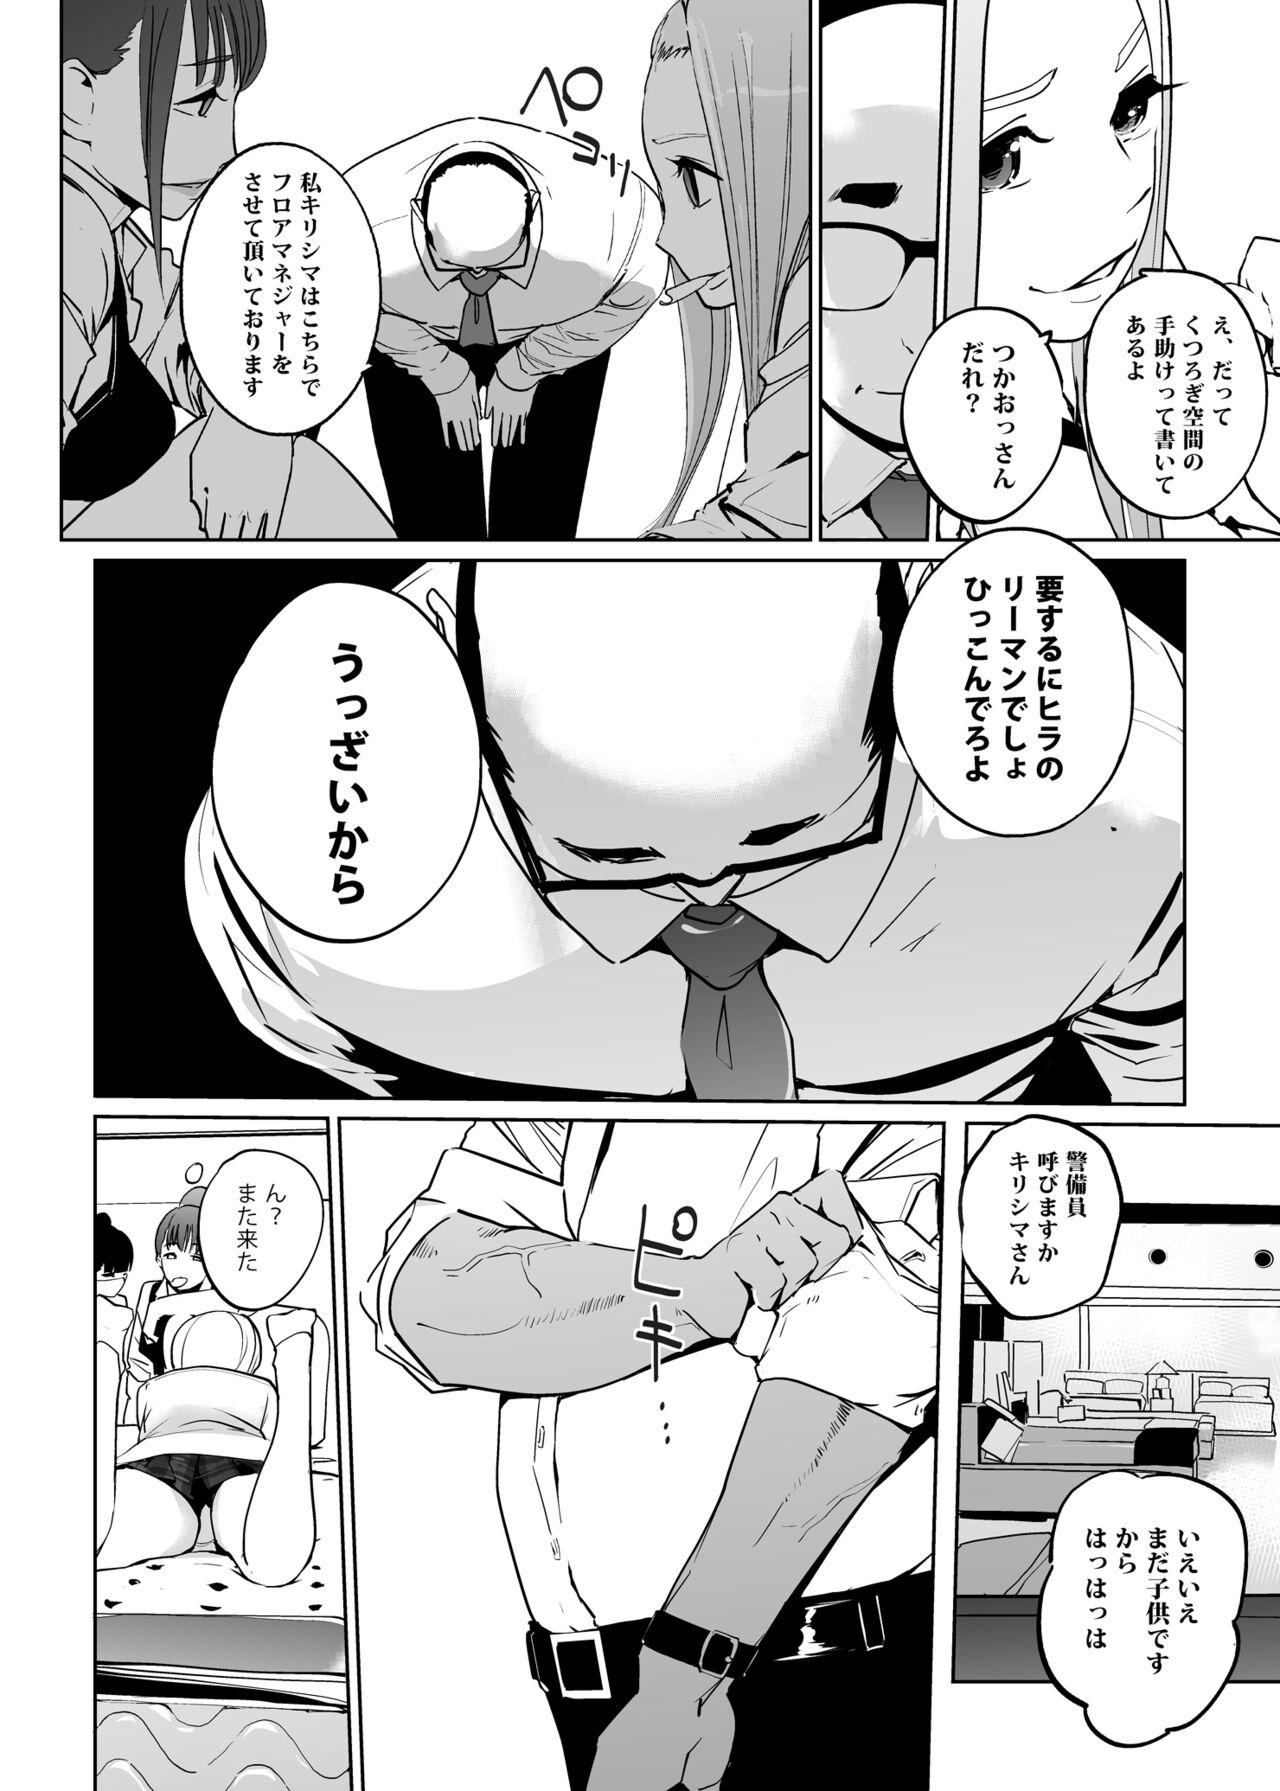 Athletic NTR Nemuri Hime vol. 2 - Original Suruba - Page 6